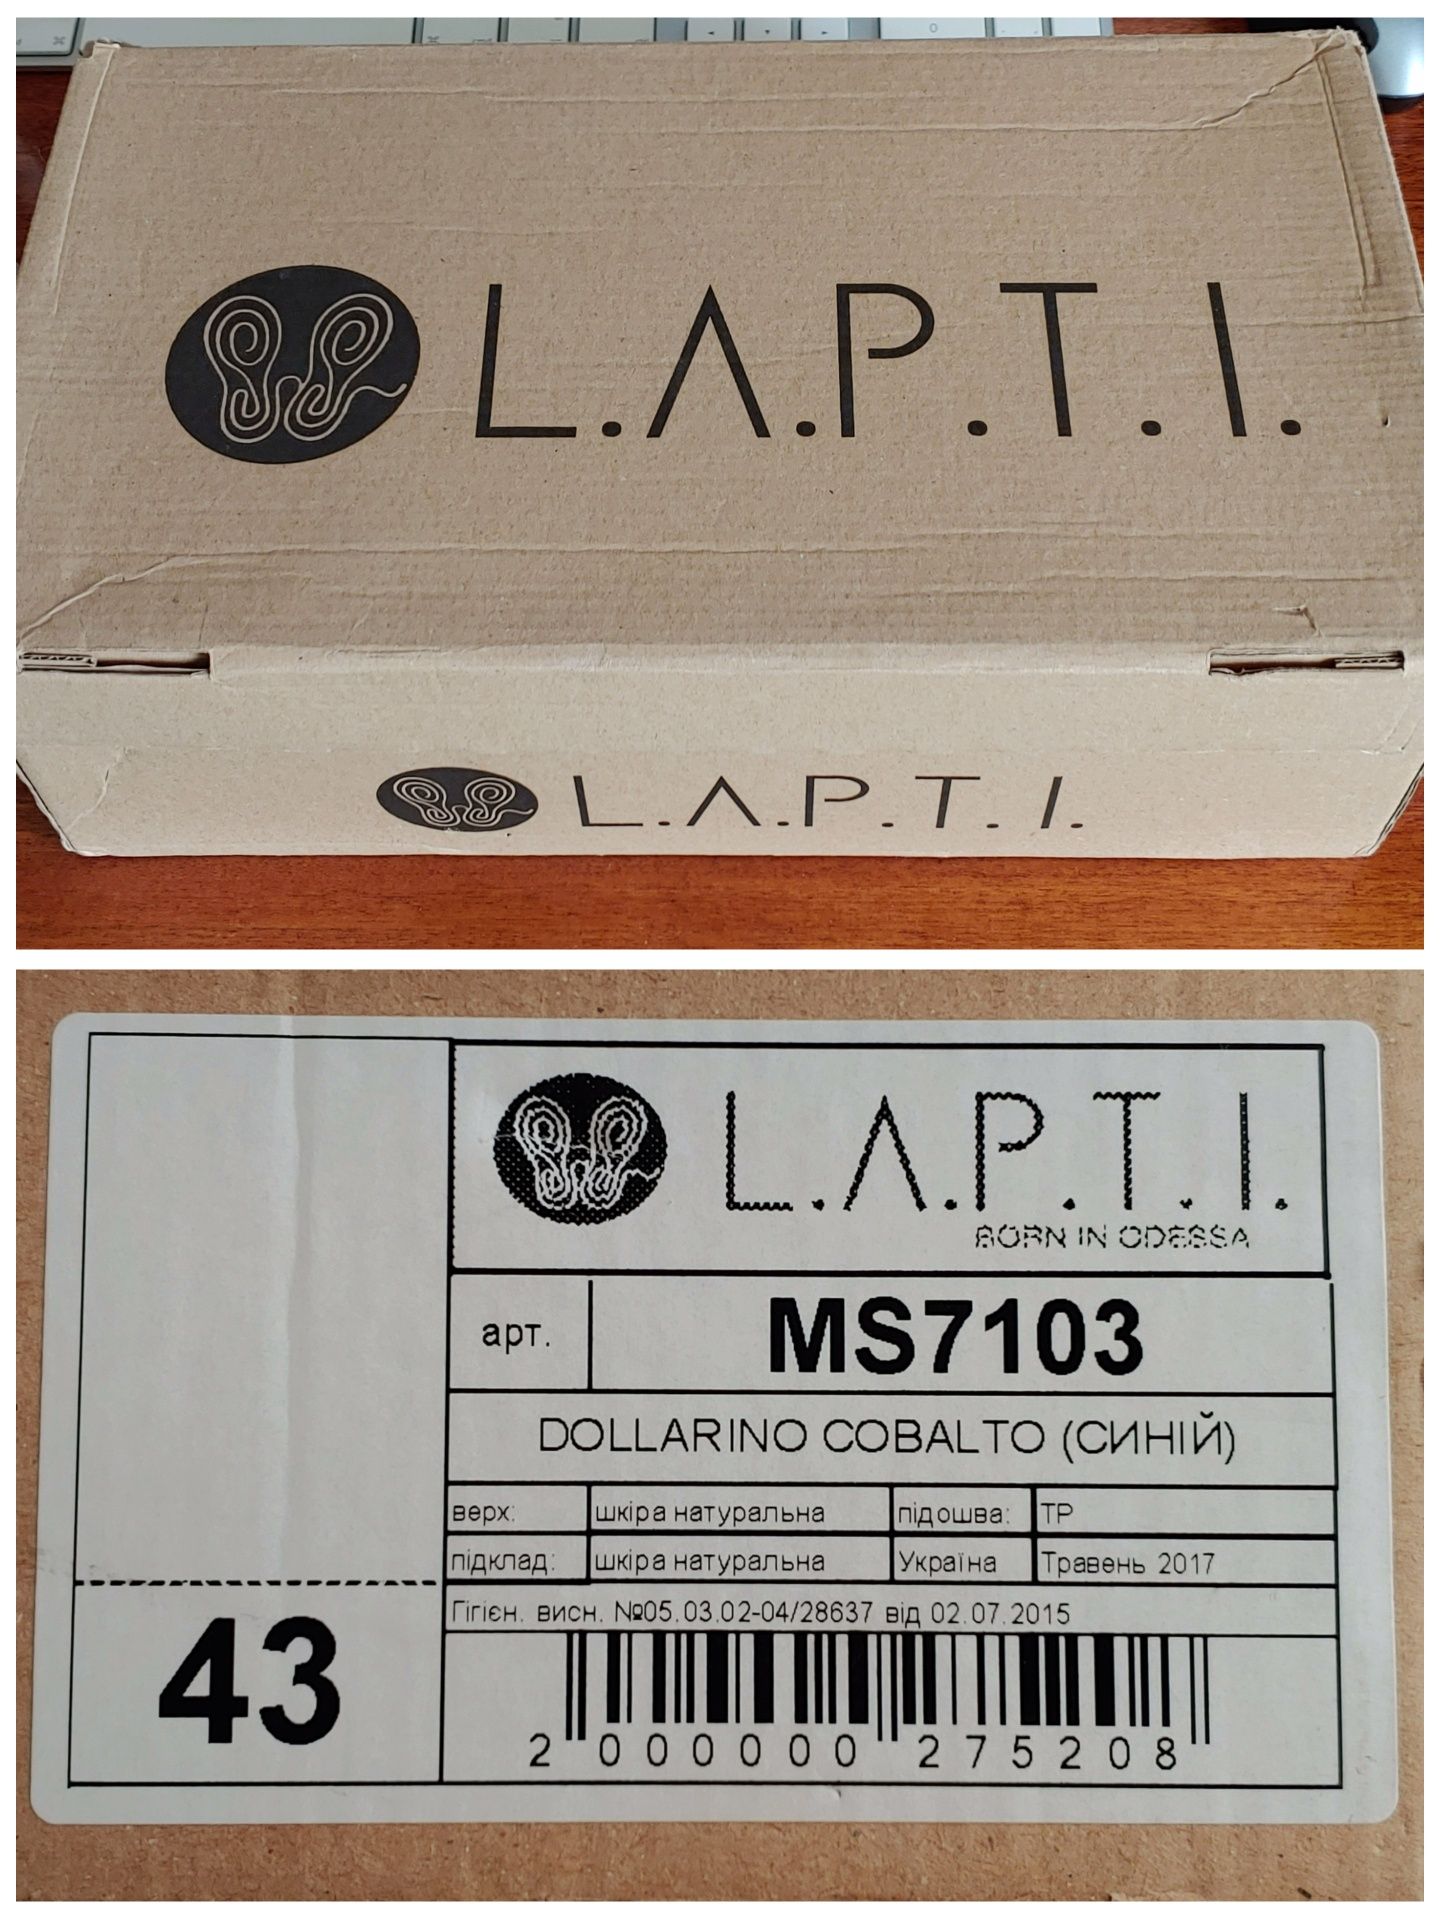 Кожаные кеды L.A.P.T.I. 45 (290) В коробке. Сникерс кроссовки кежуал.